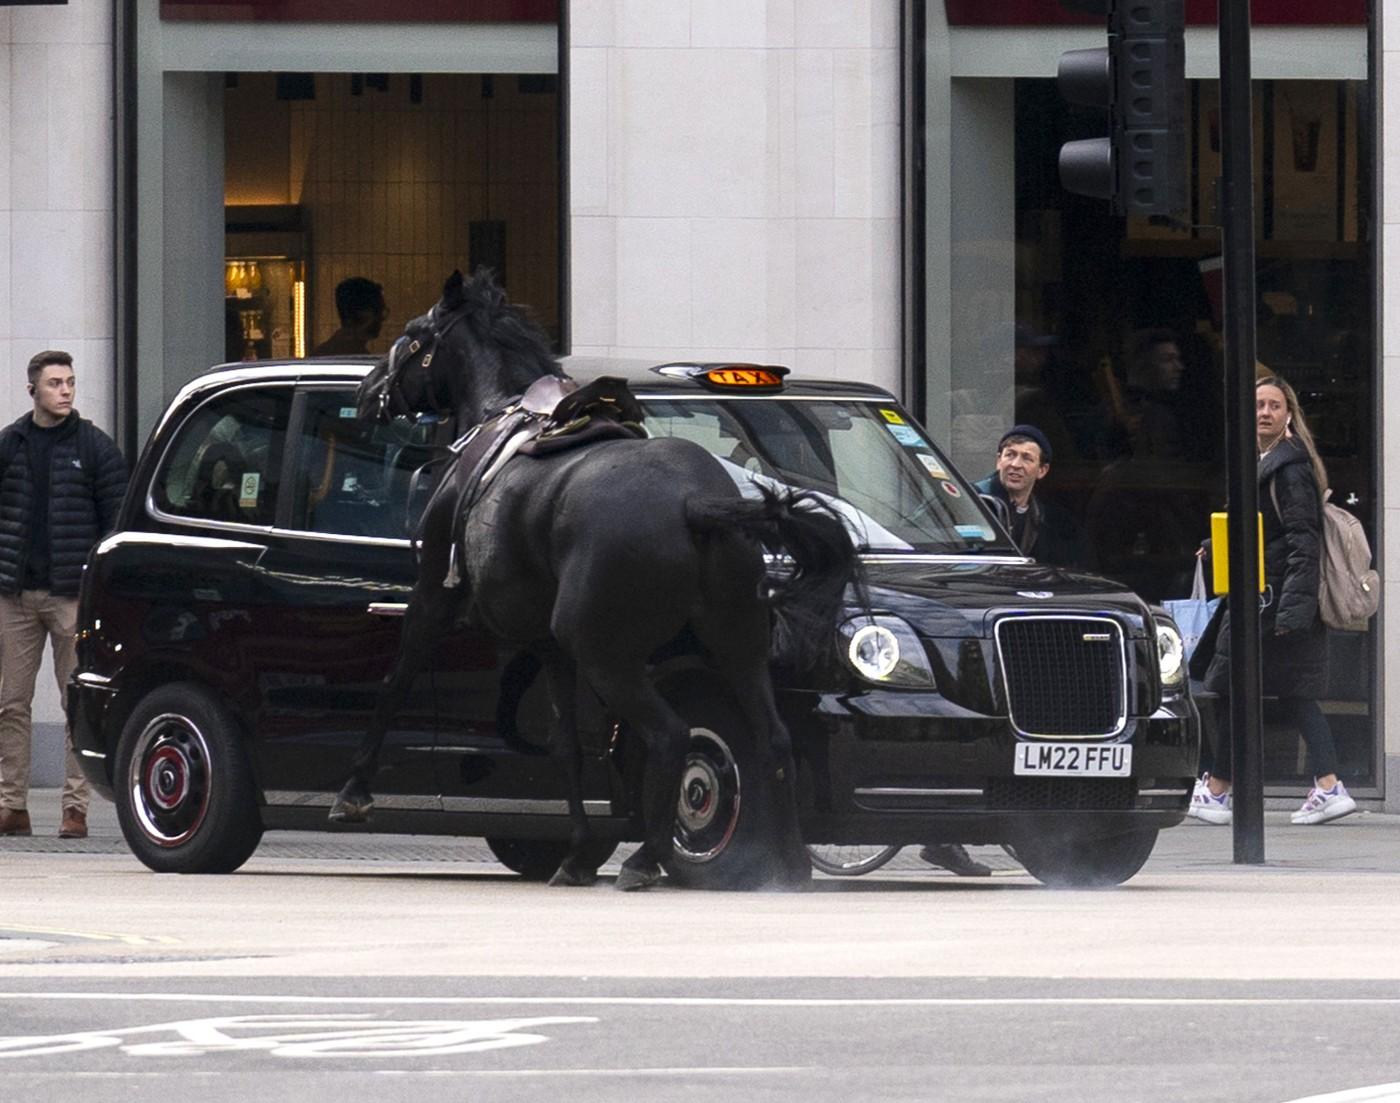 Haos în centrul Londrei. Doi cai aleargă liberi pe străzi, iar unul pare acoperit de sânge